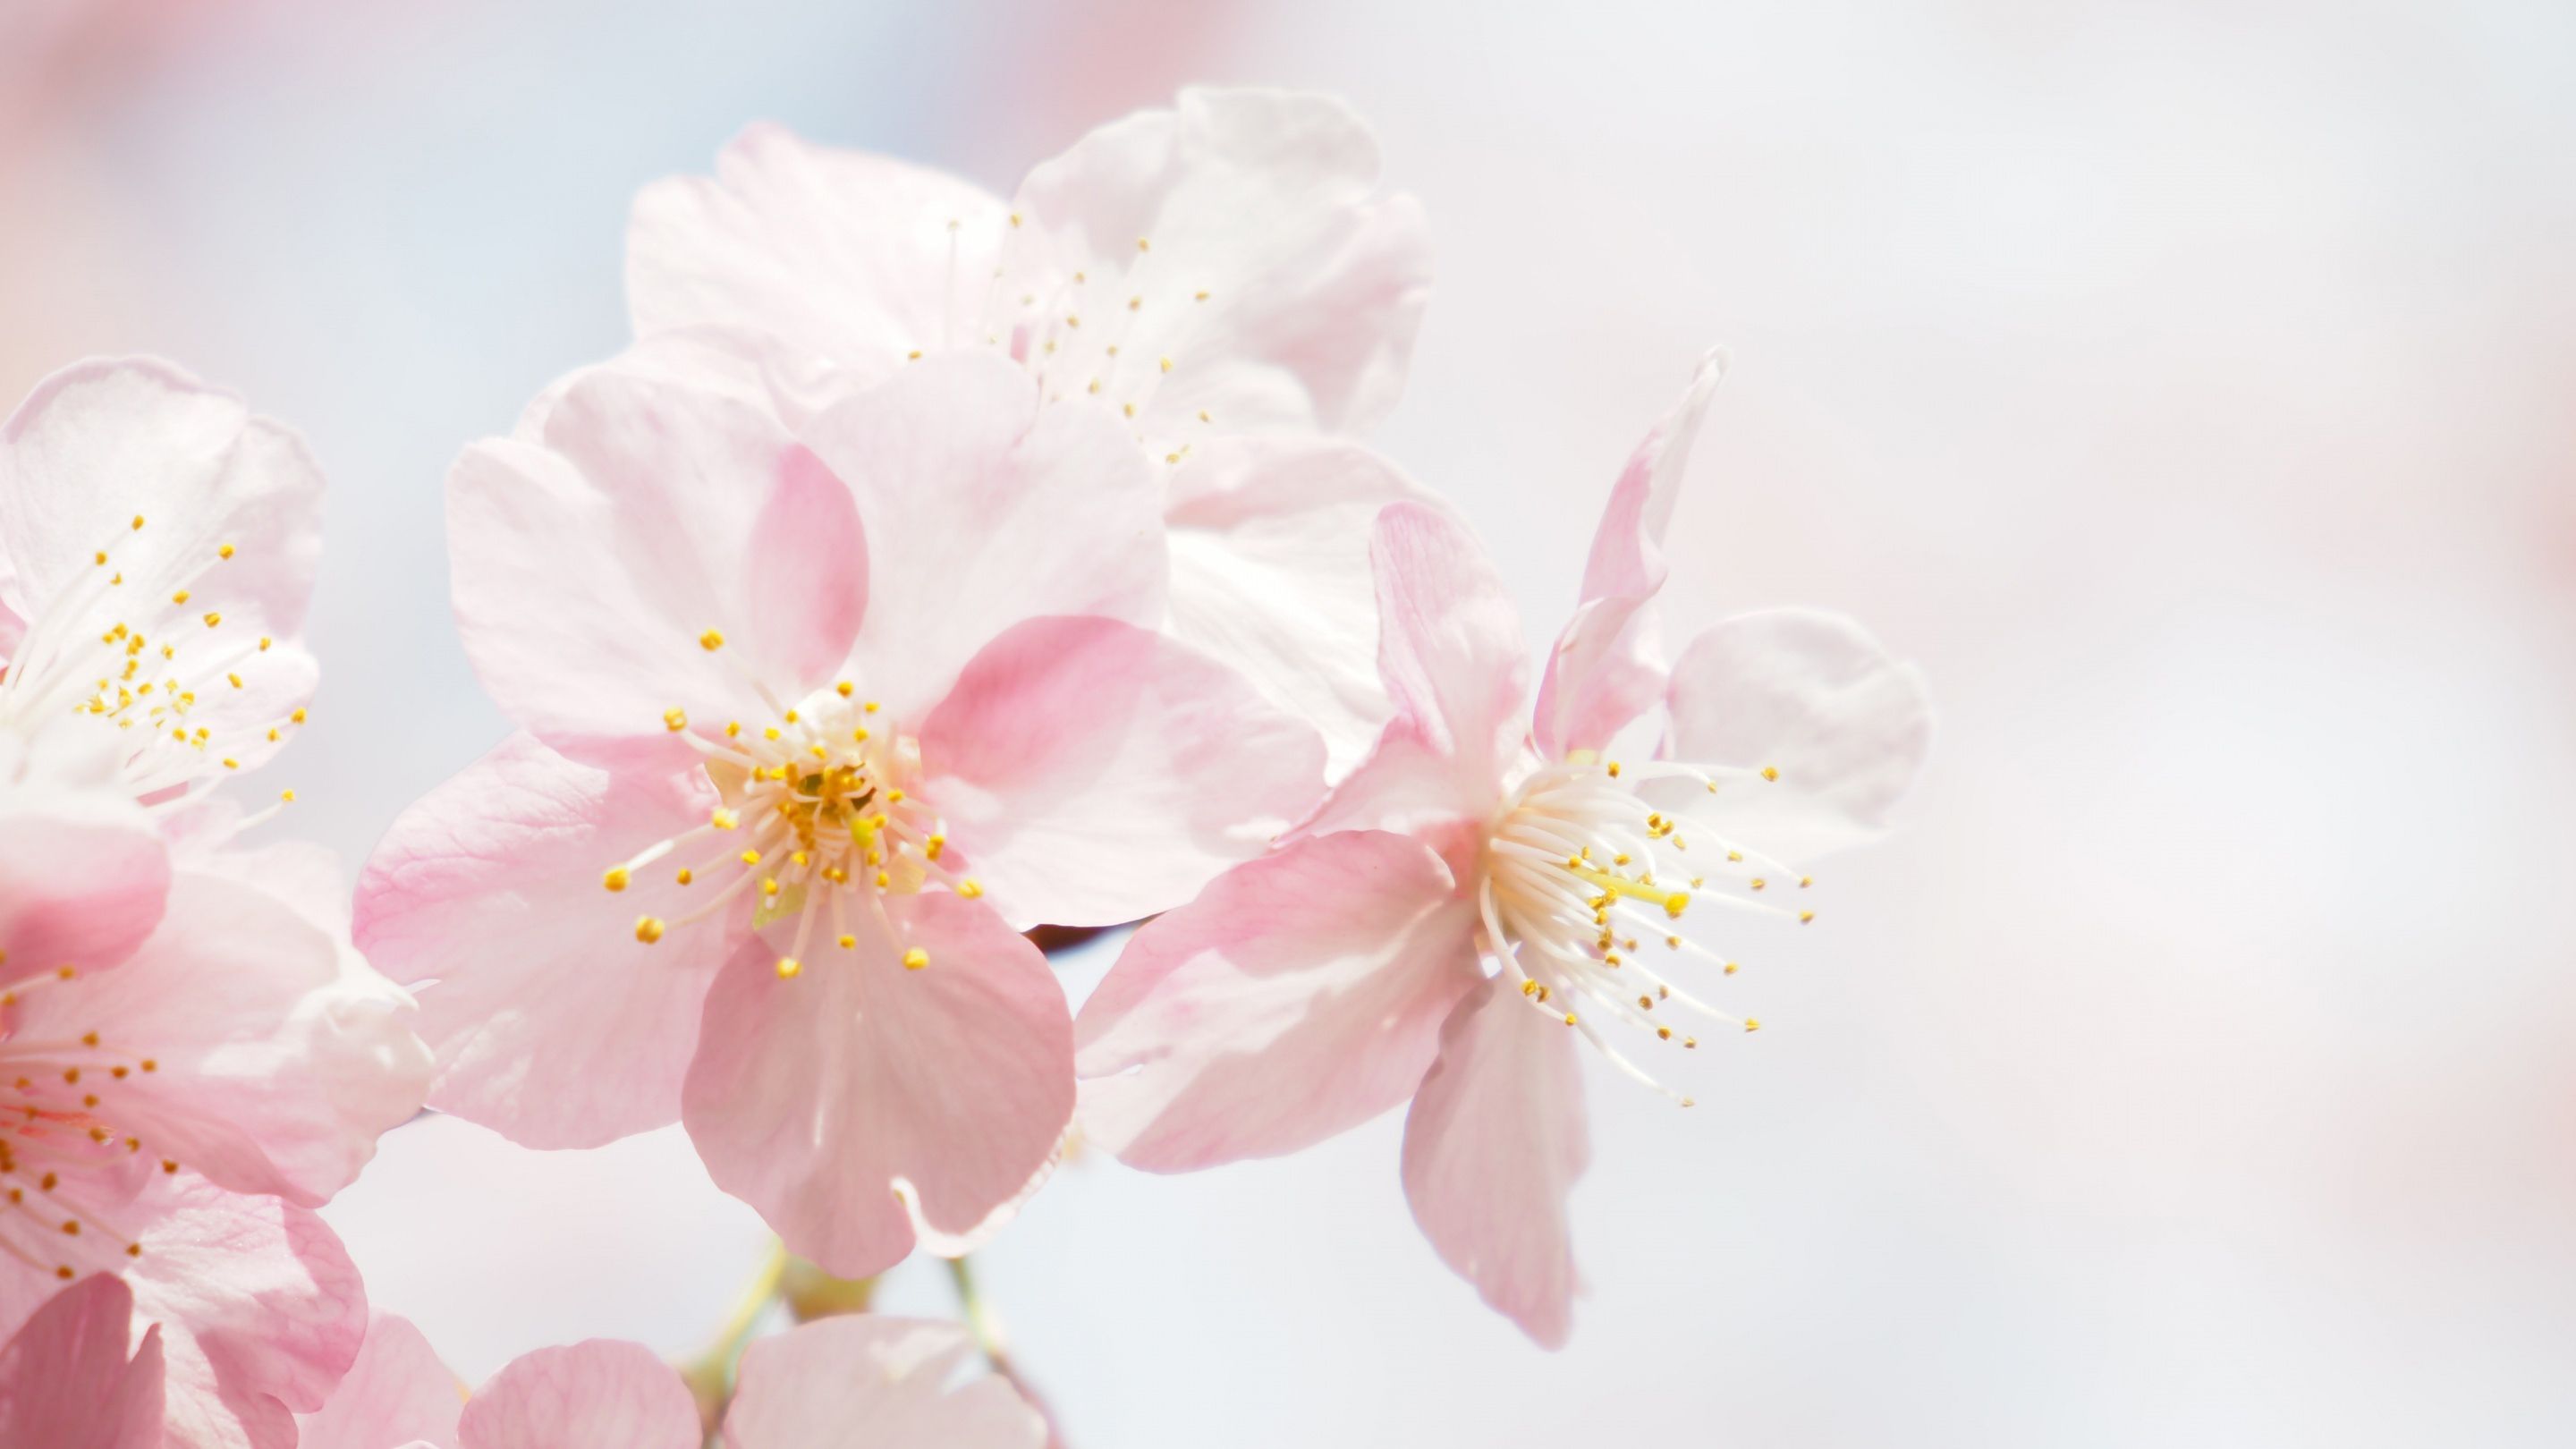 عکس منحصر به فرد جذاب از شکوفه های سفید با کیفیت خیلی خوب 